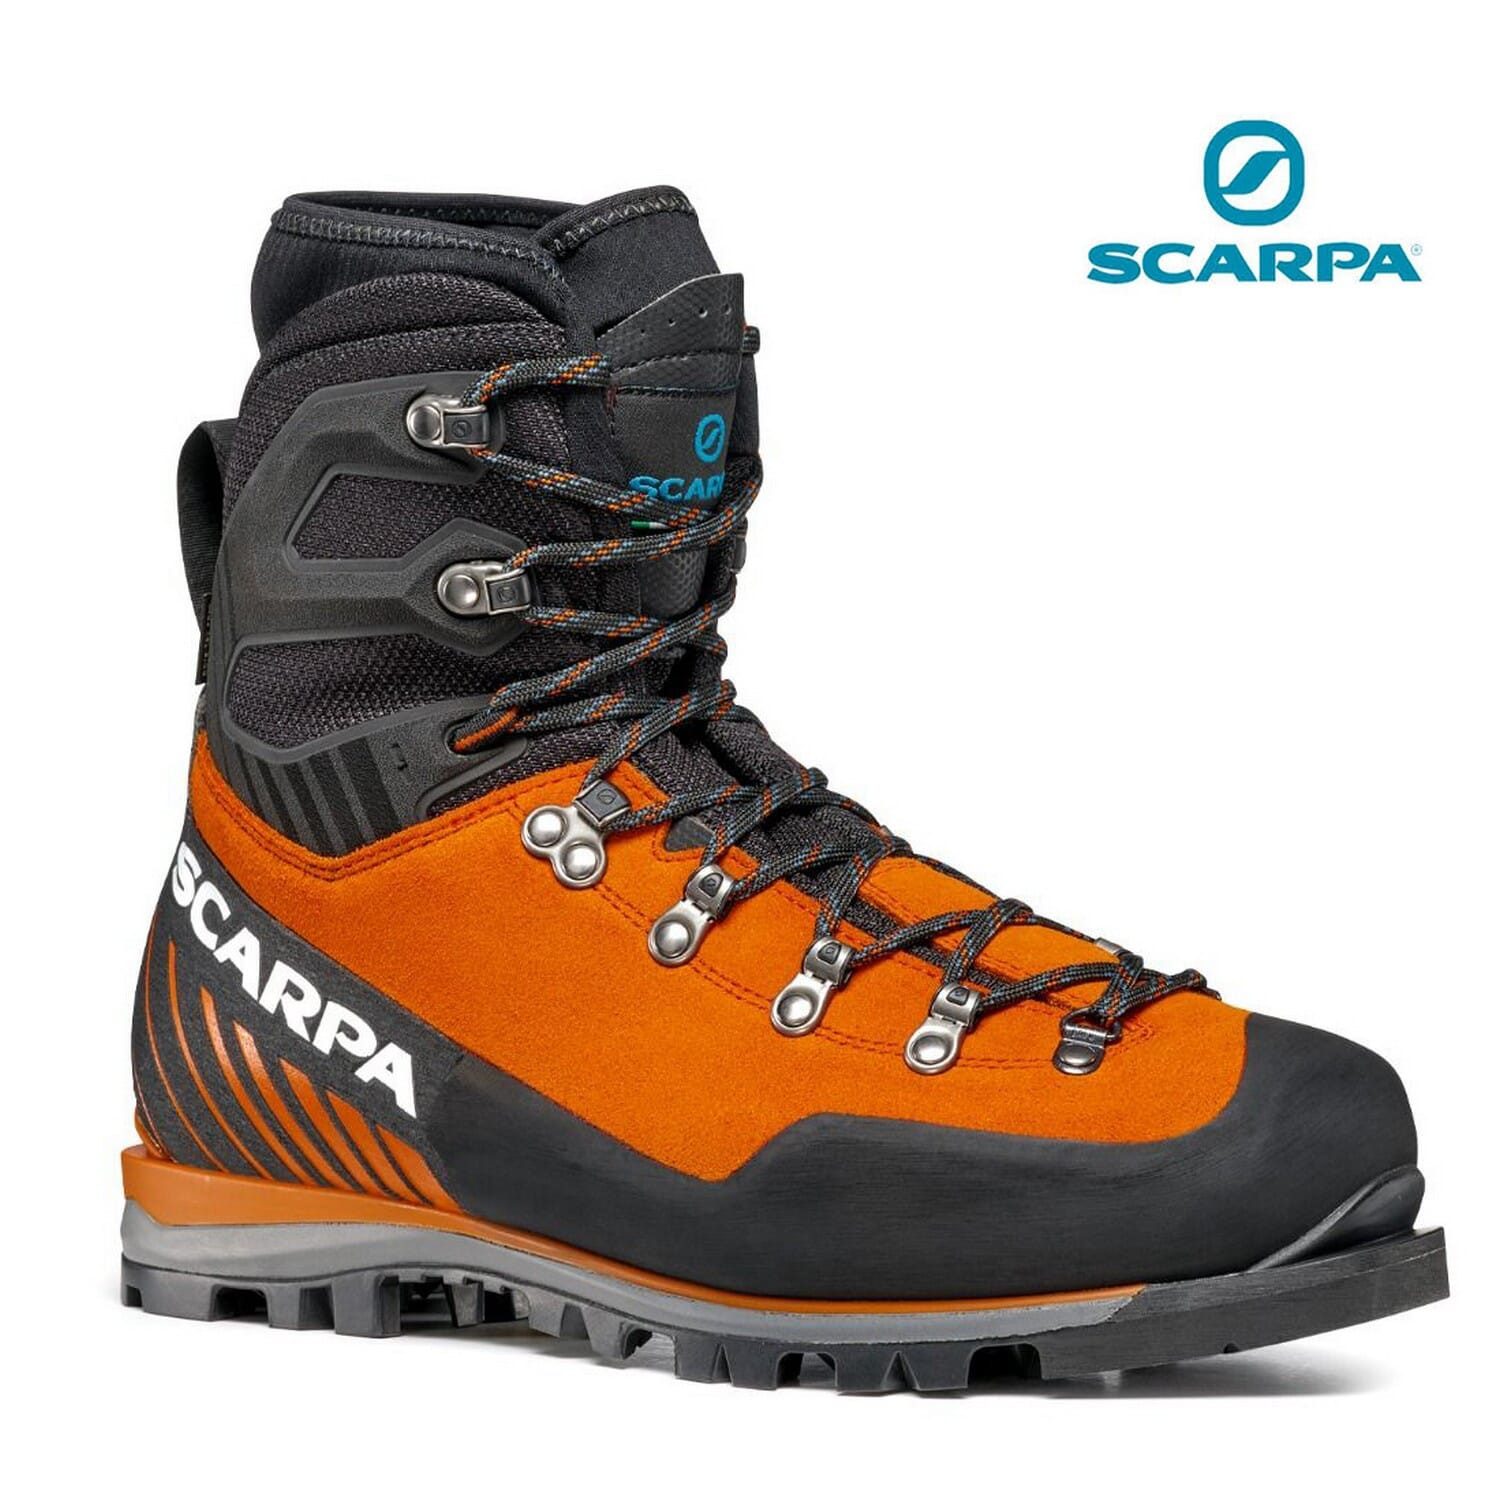 SCARPA Mont Blanc Pro Gtx Boots for Men Color Tonic